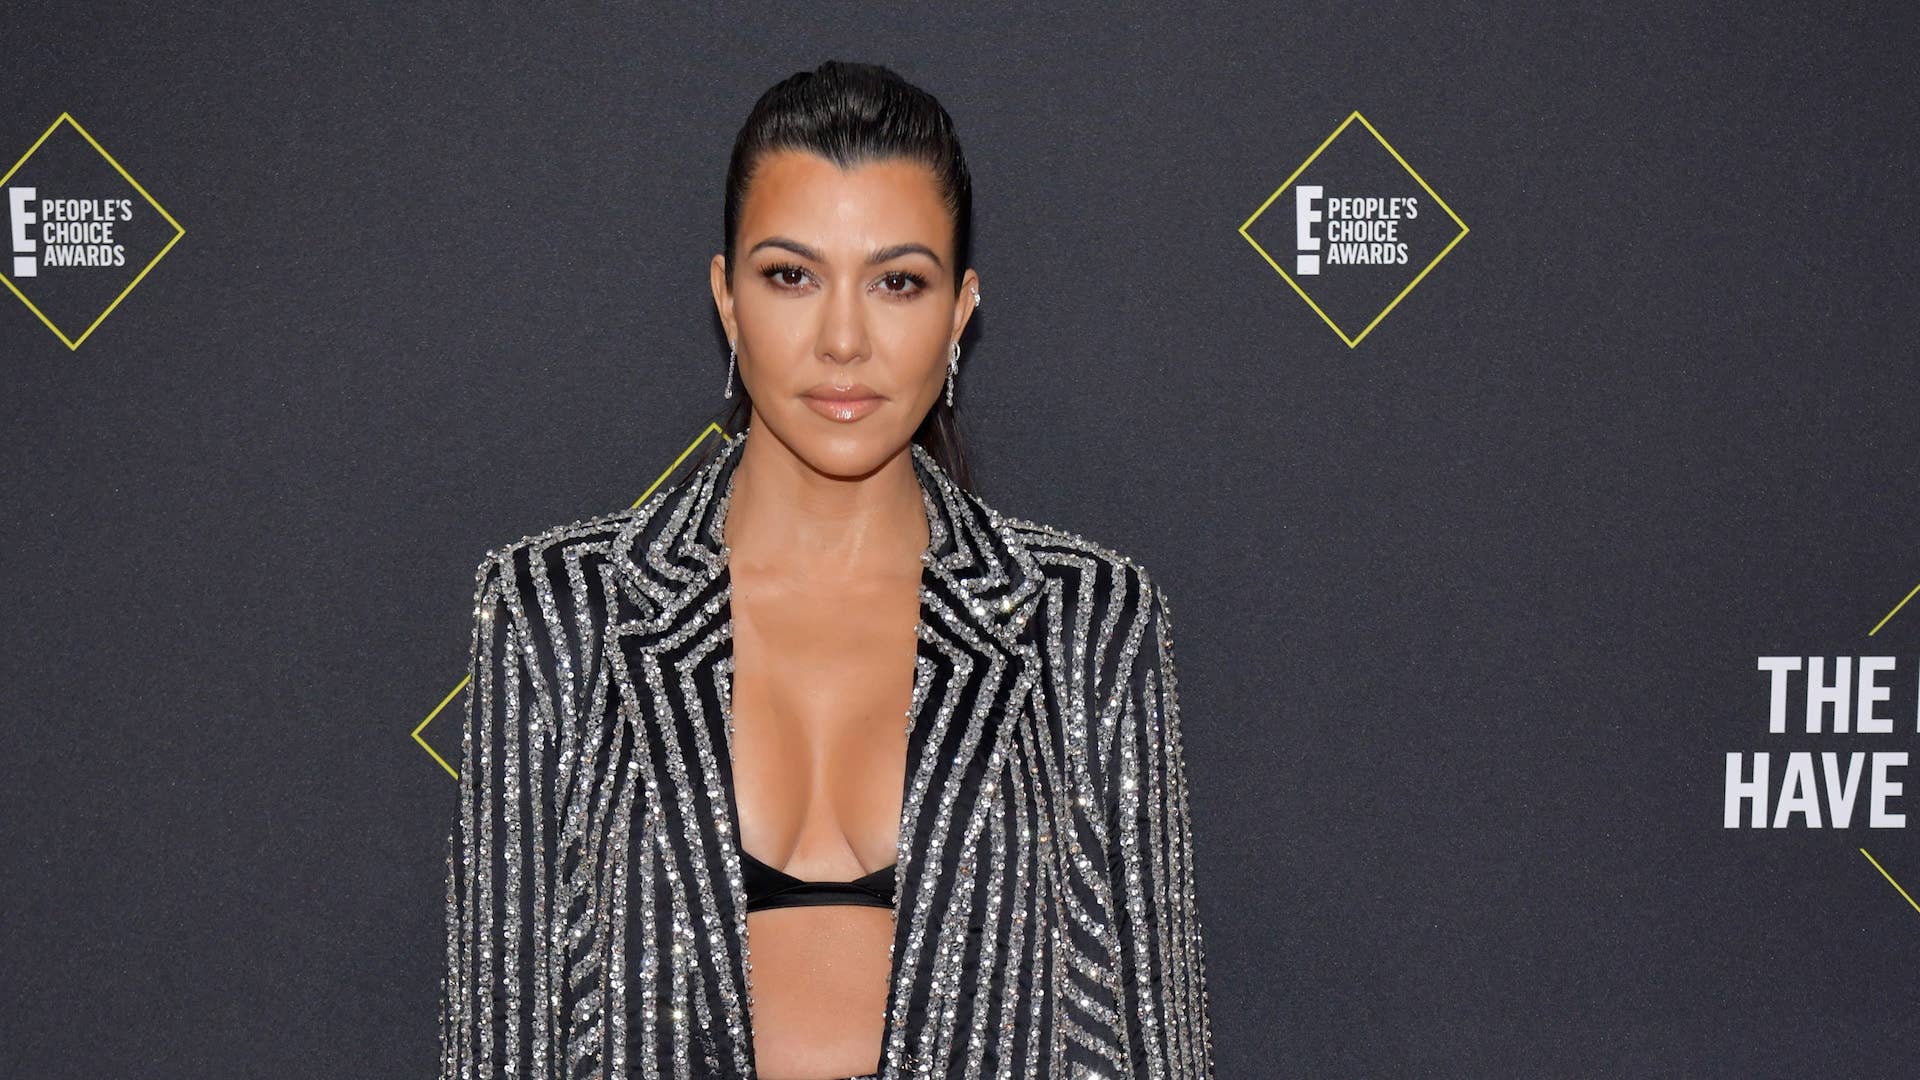 Kourtney Kardashian attends the 2019 E! People's Choice Awards